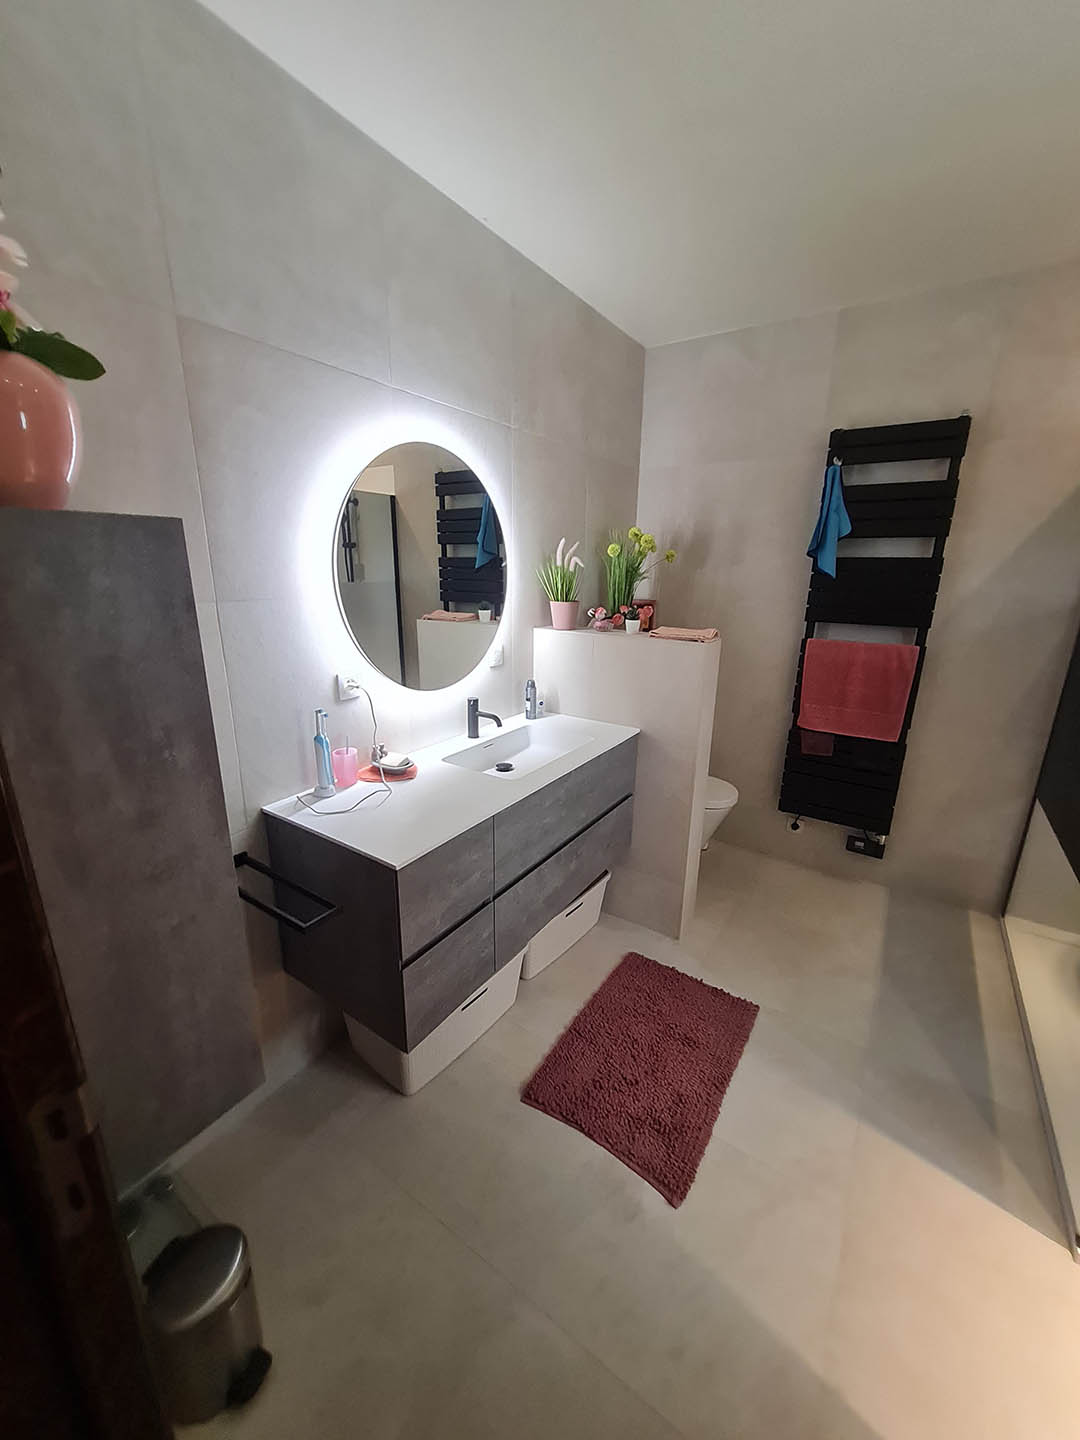 Badkamer renovatie Haacht - Badkamermeubel met ronde spiegel met licht